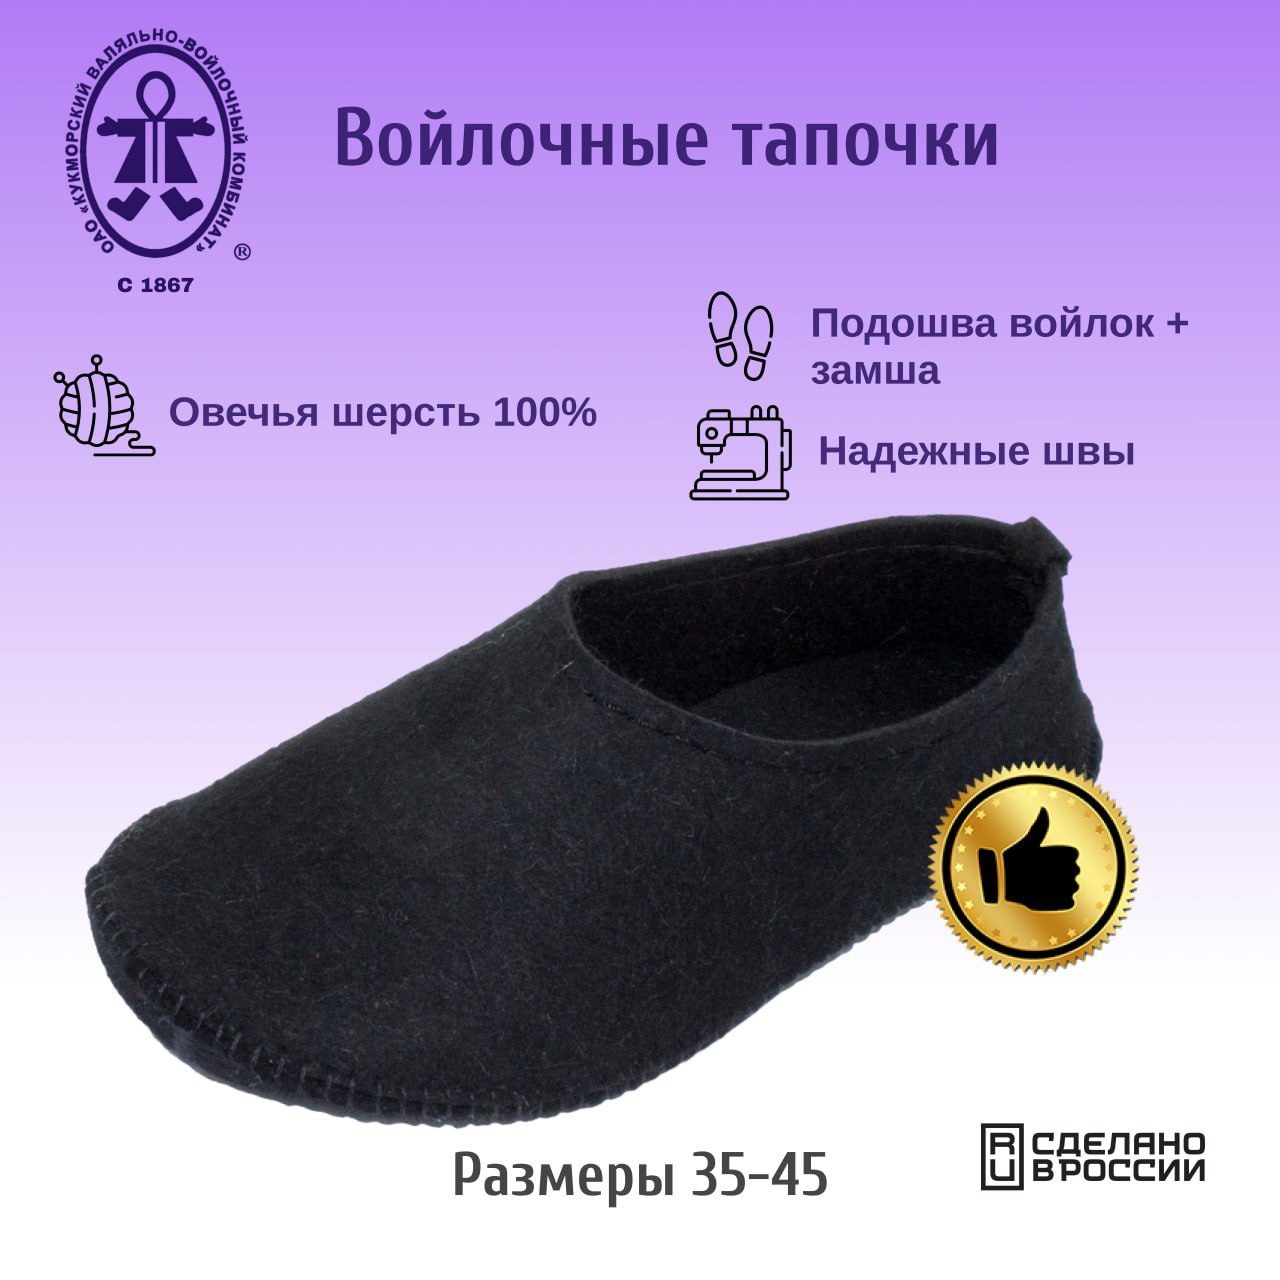 Тапочки Кукморские валенки Т-34-3094 черный, 38